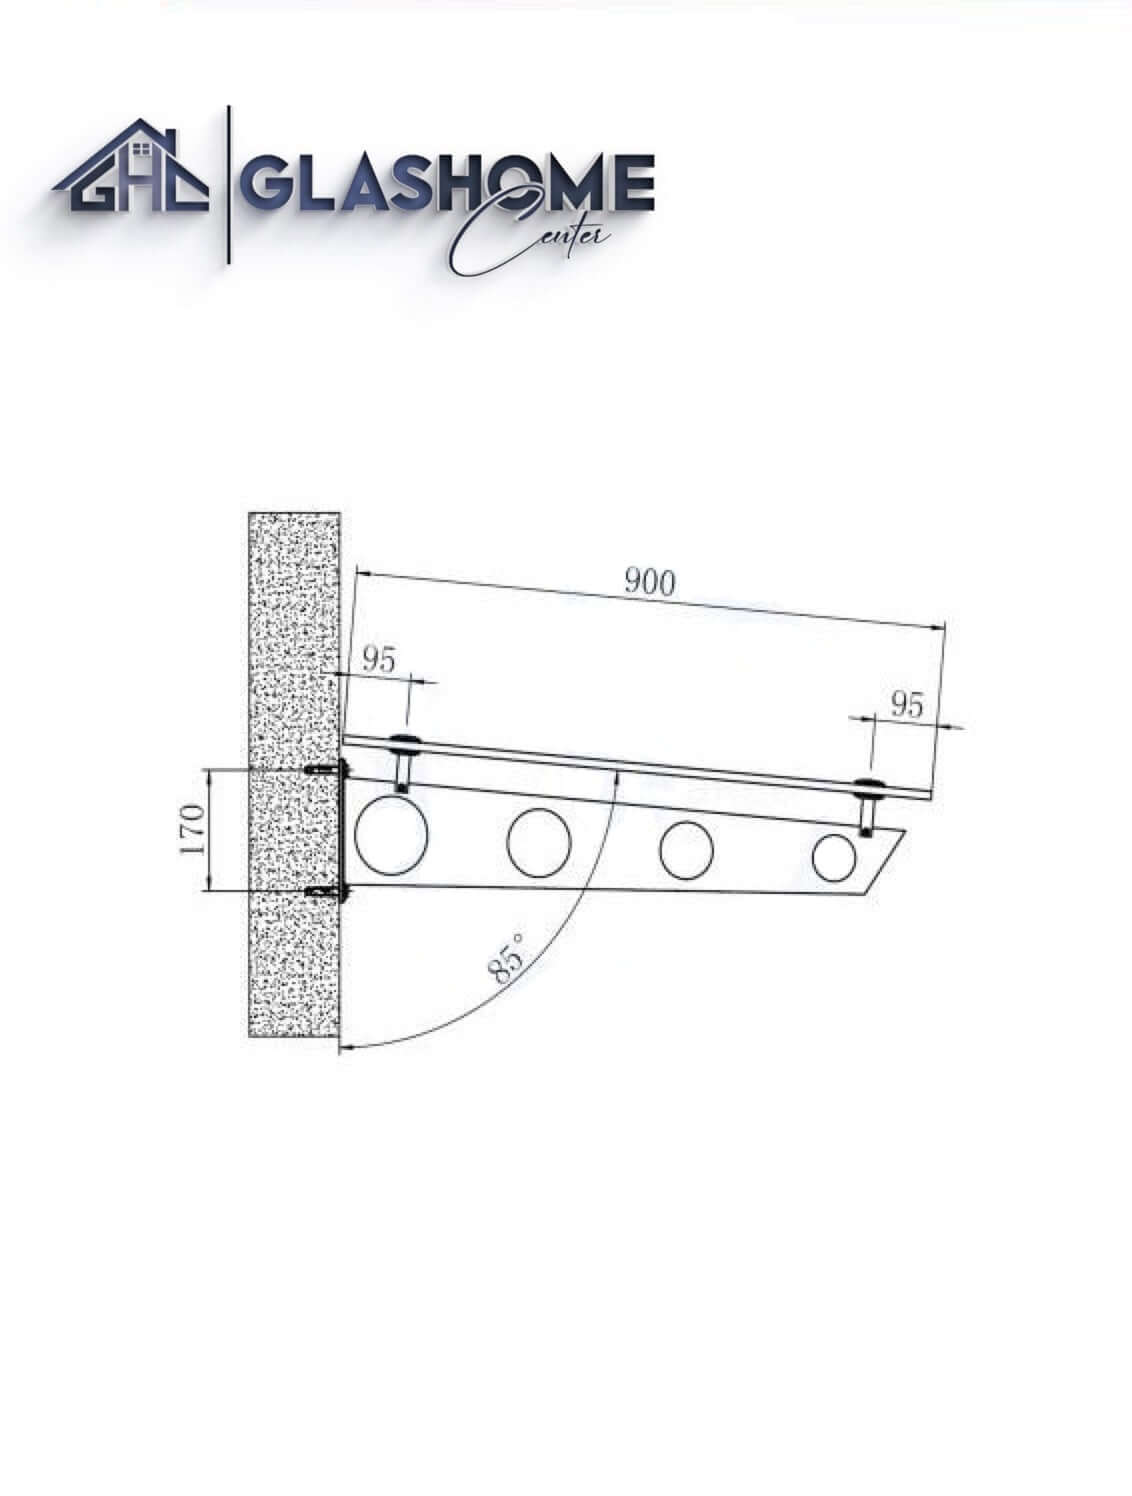 GlasHomeCenter - Glasvordach - Milchglas - 150x90cm - 13,1mm VSG - incl. 2 Edelstahlhalterungen variante "Stoccolma"